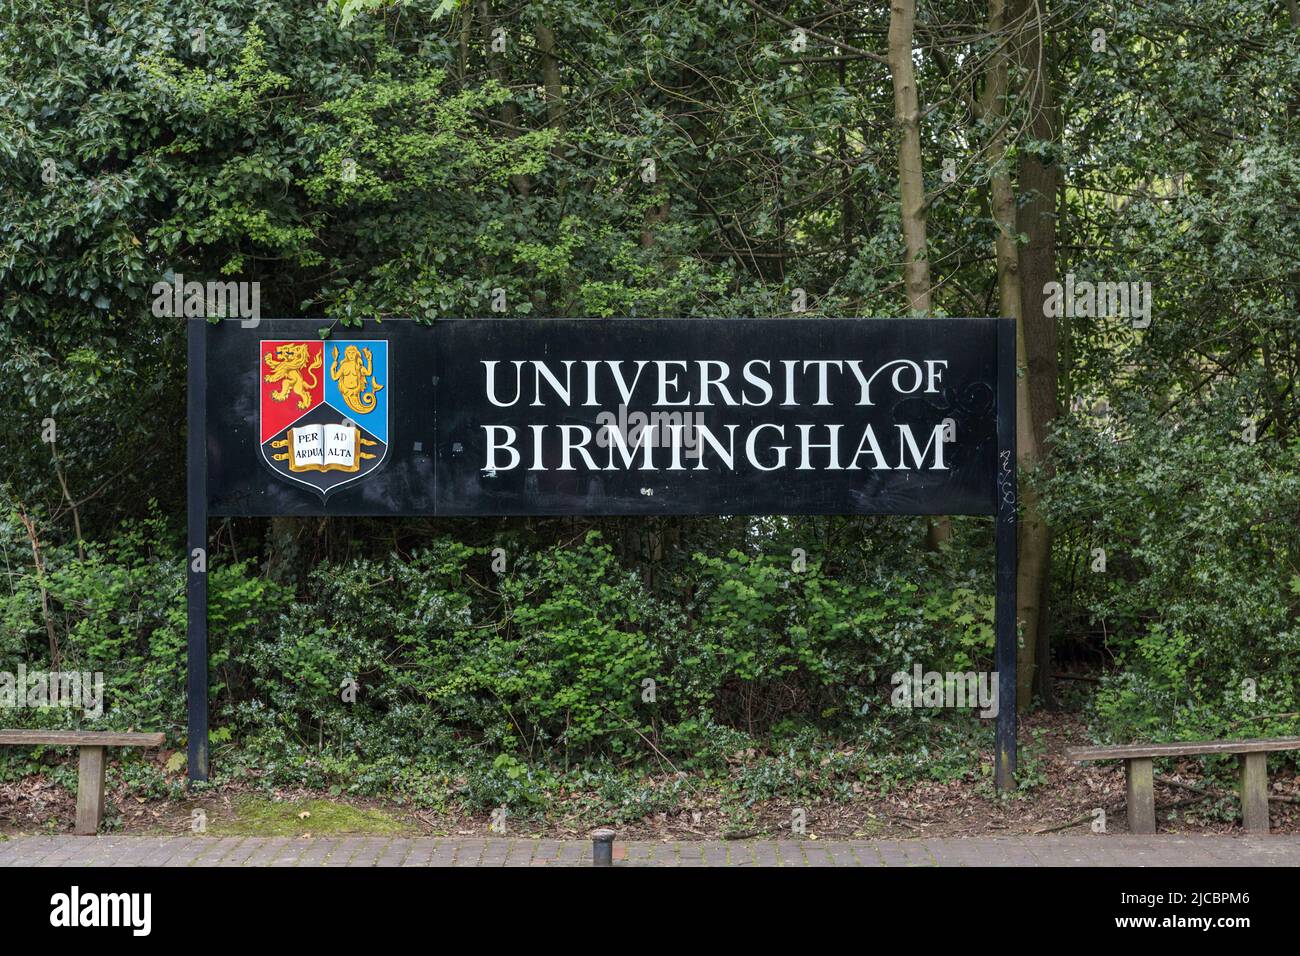 Melden Sie sich auf dem Campus der University of Birmingham unter dem Motto an. Hochschulbildung, Studenten oder hohe Studiengebühren, Studentendarlehen Konzept. Stockfoto